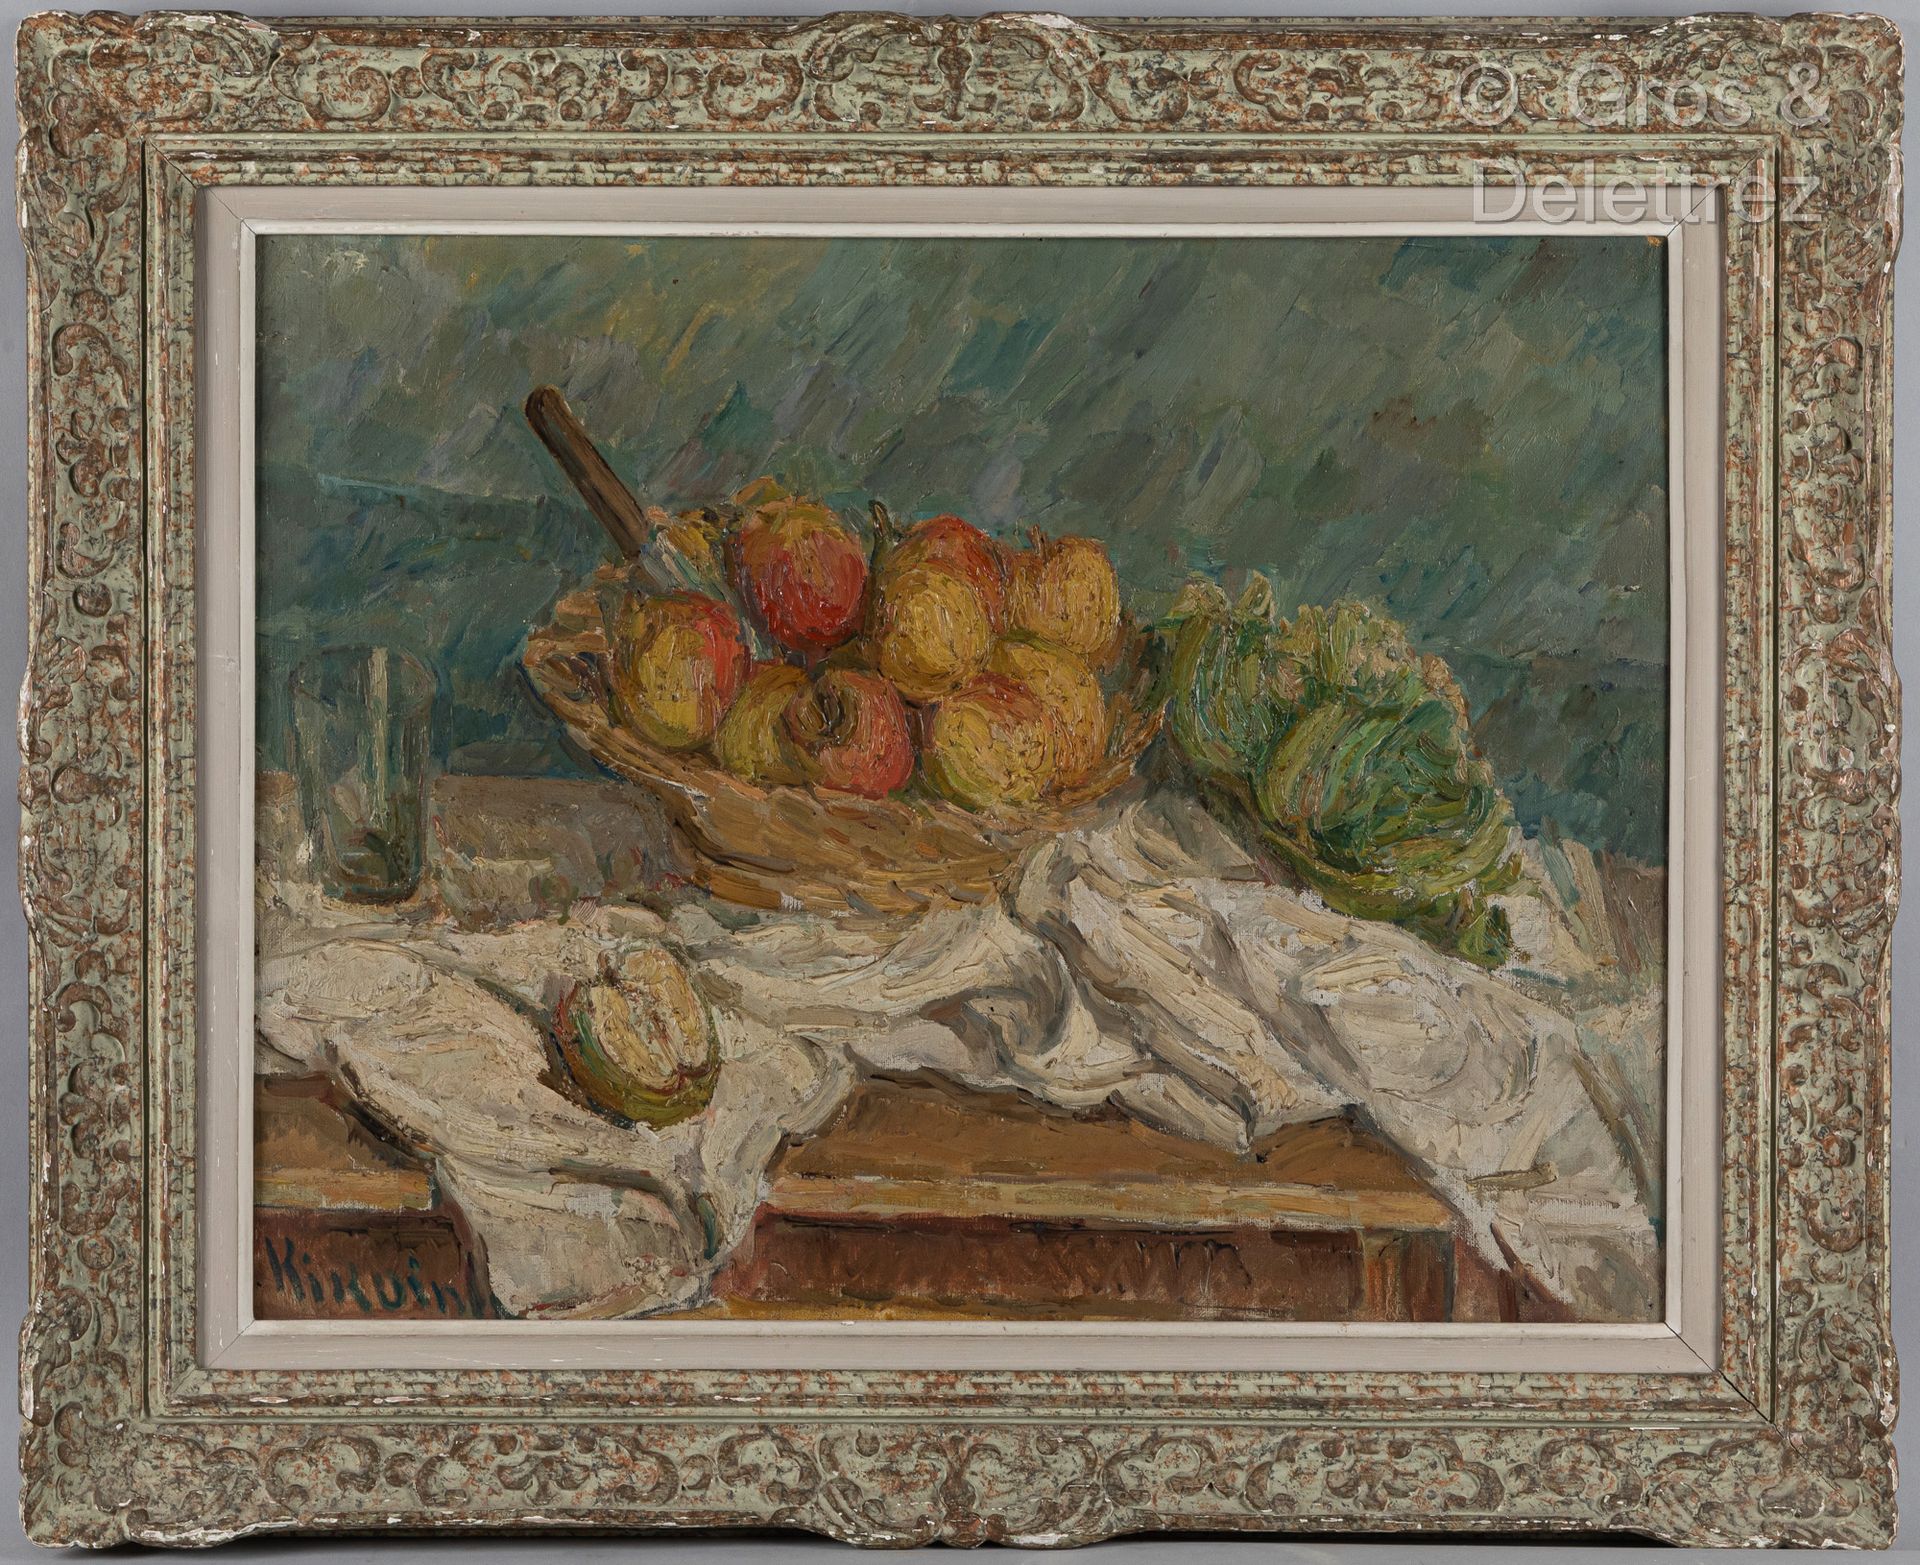 Michel KIKOINE (1892-1968) Natura morta con mele, 1930-1935 circa

Olio su tela.&hellip;